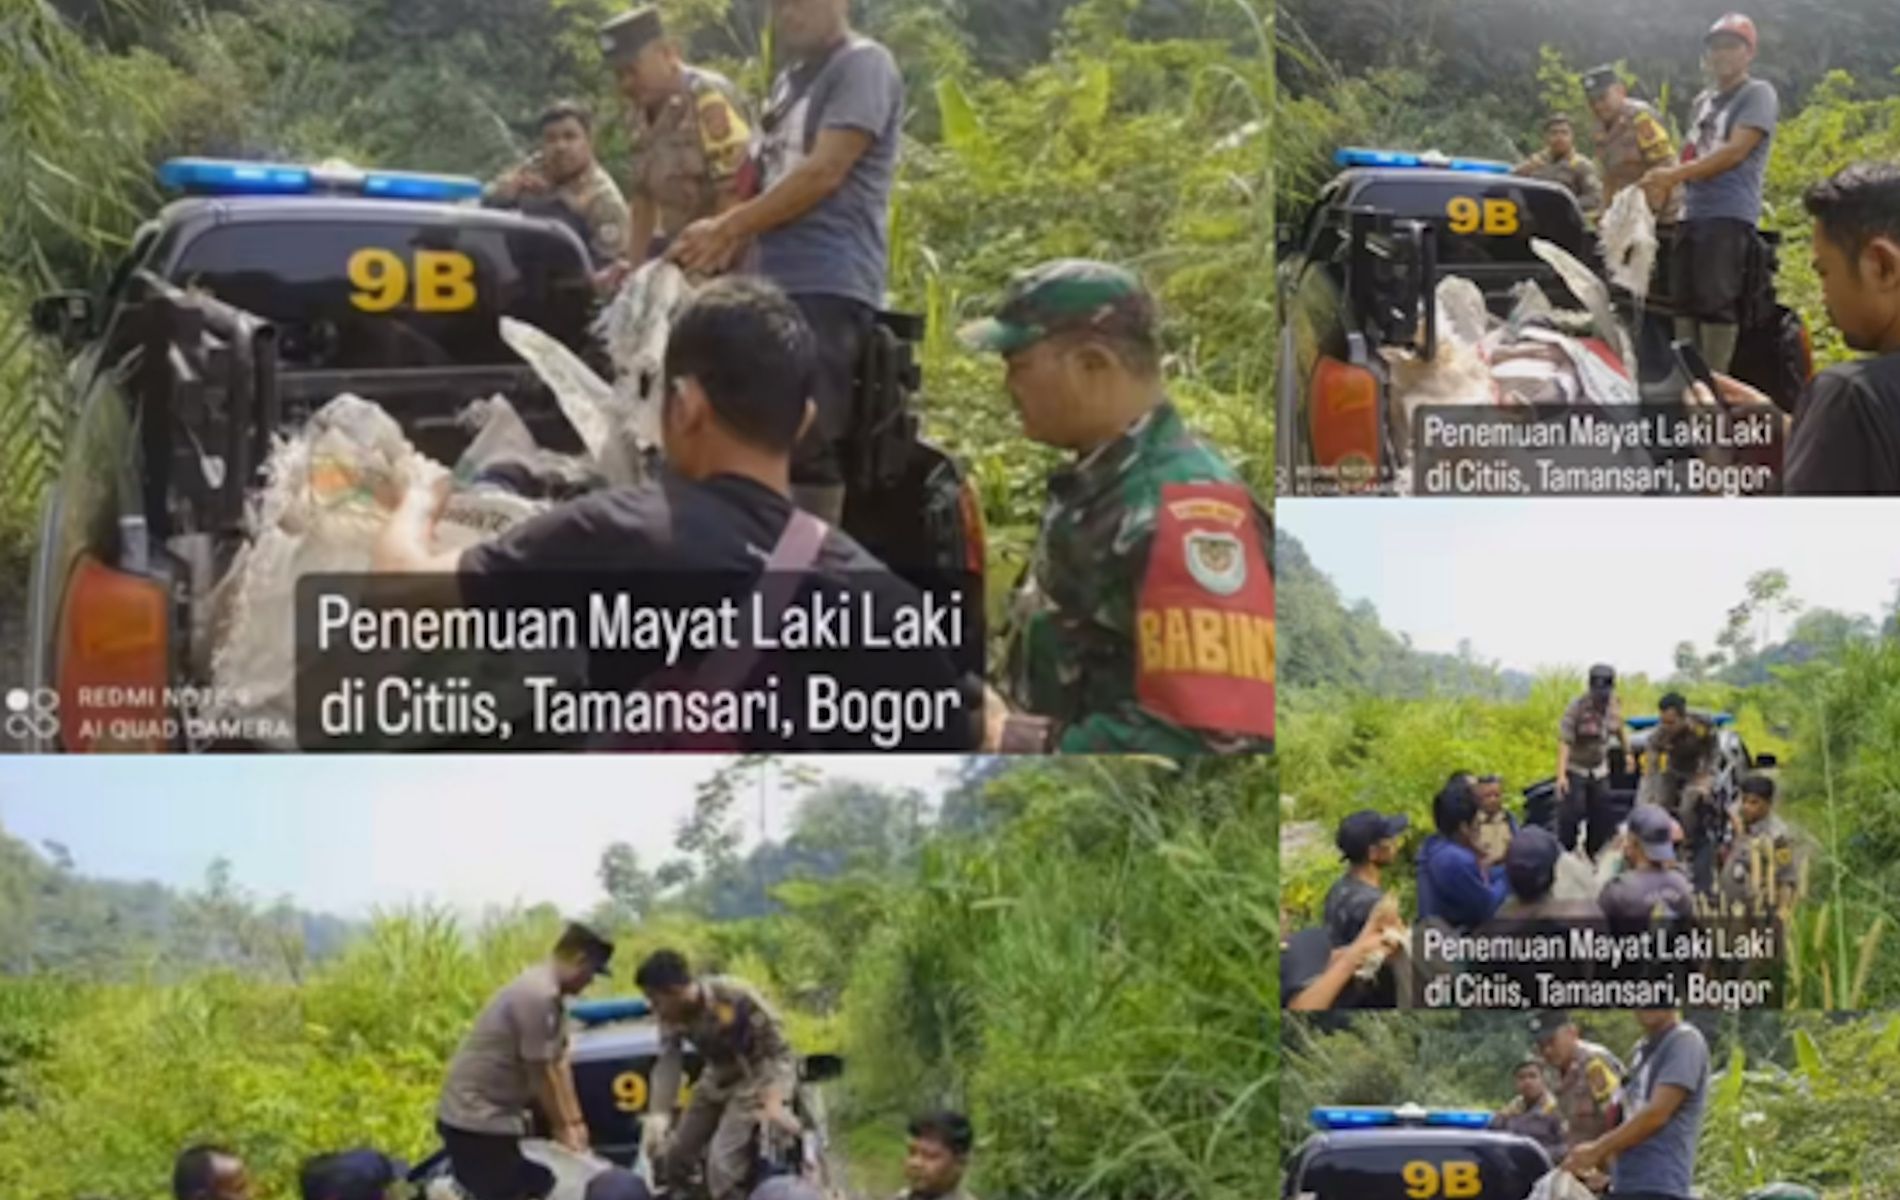 Mayat pria tanpa identitas ditemukan di antara bebatuan sungai Ciapus-Citiis, Bendungan, wilayah Desa Tamansari, Kabupaten Bogor.